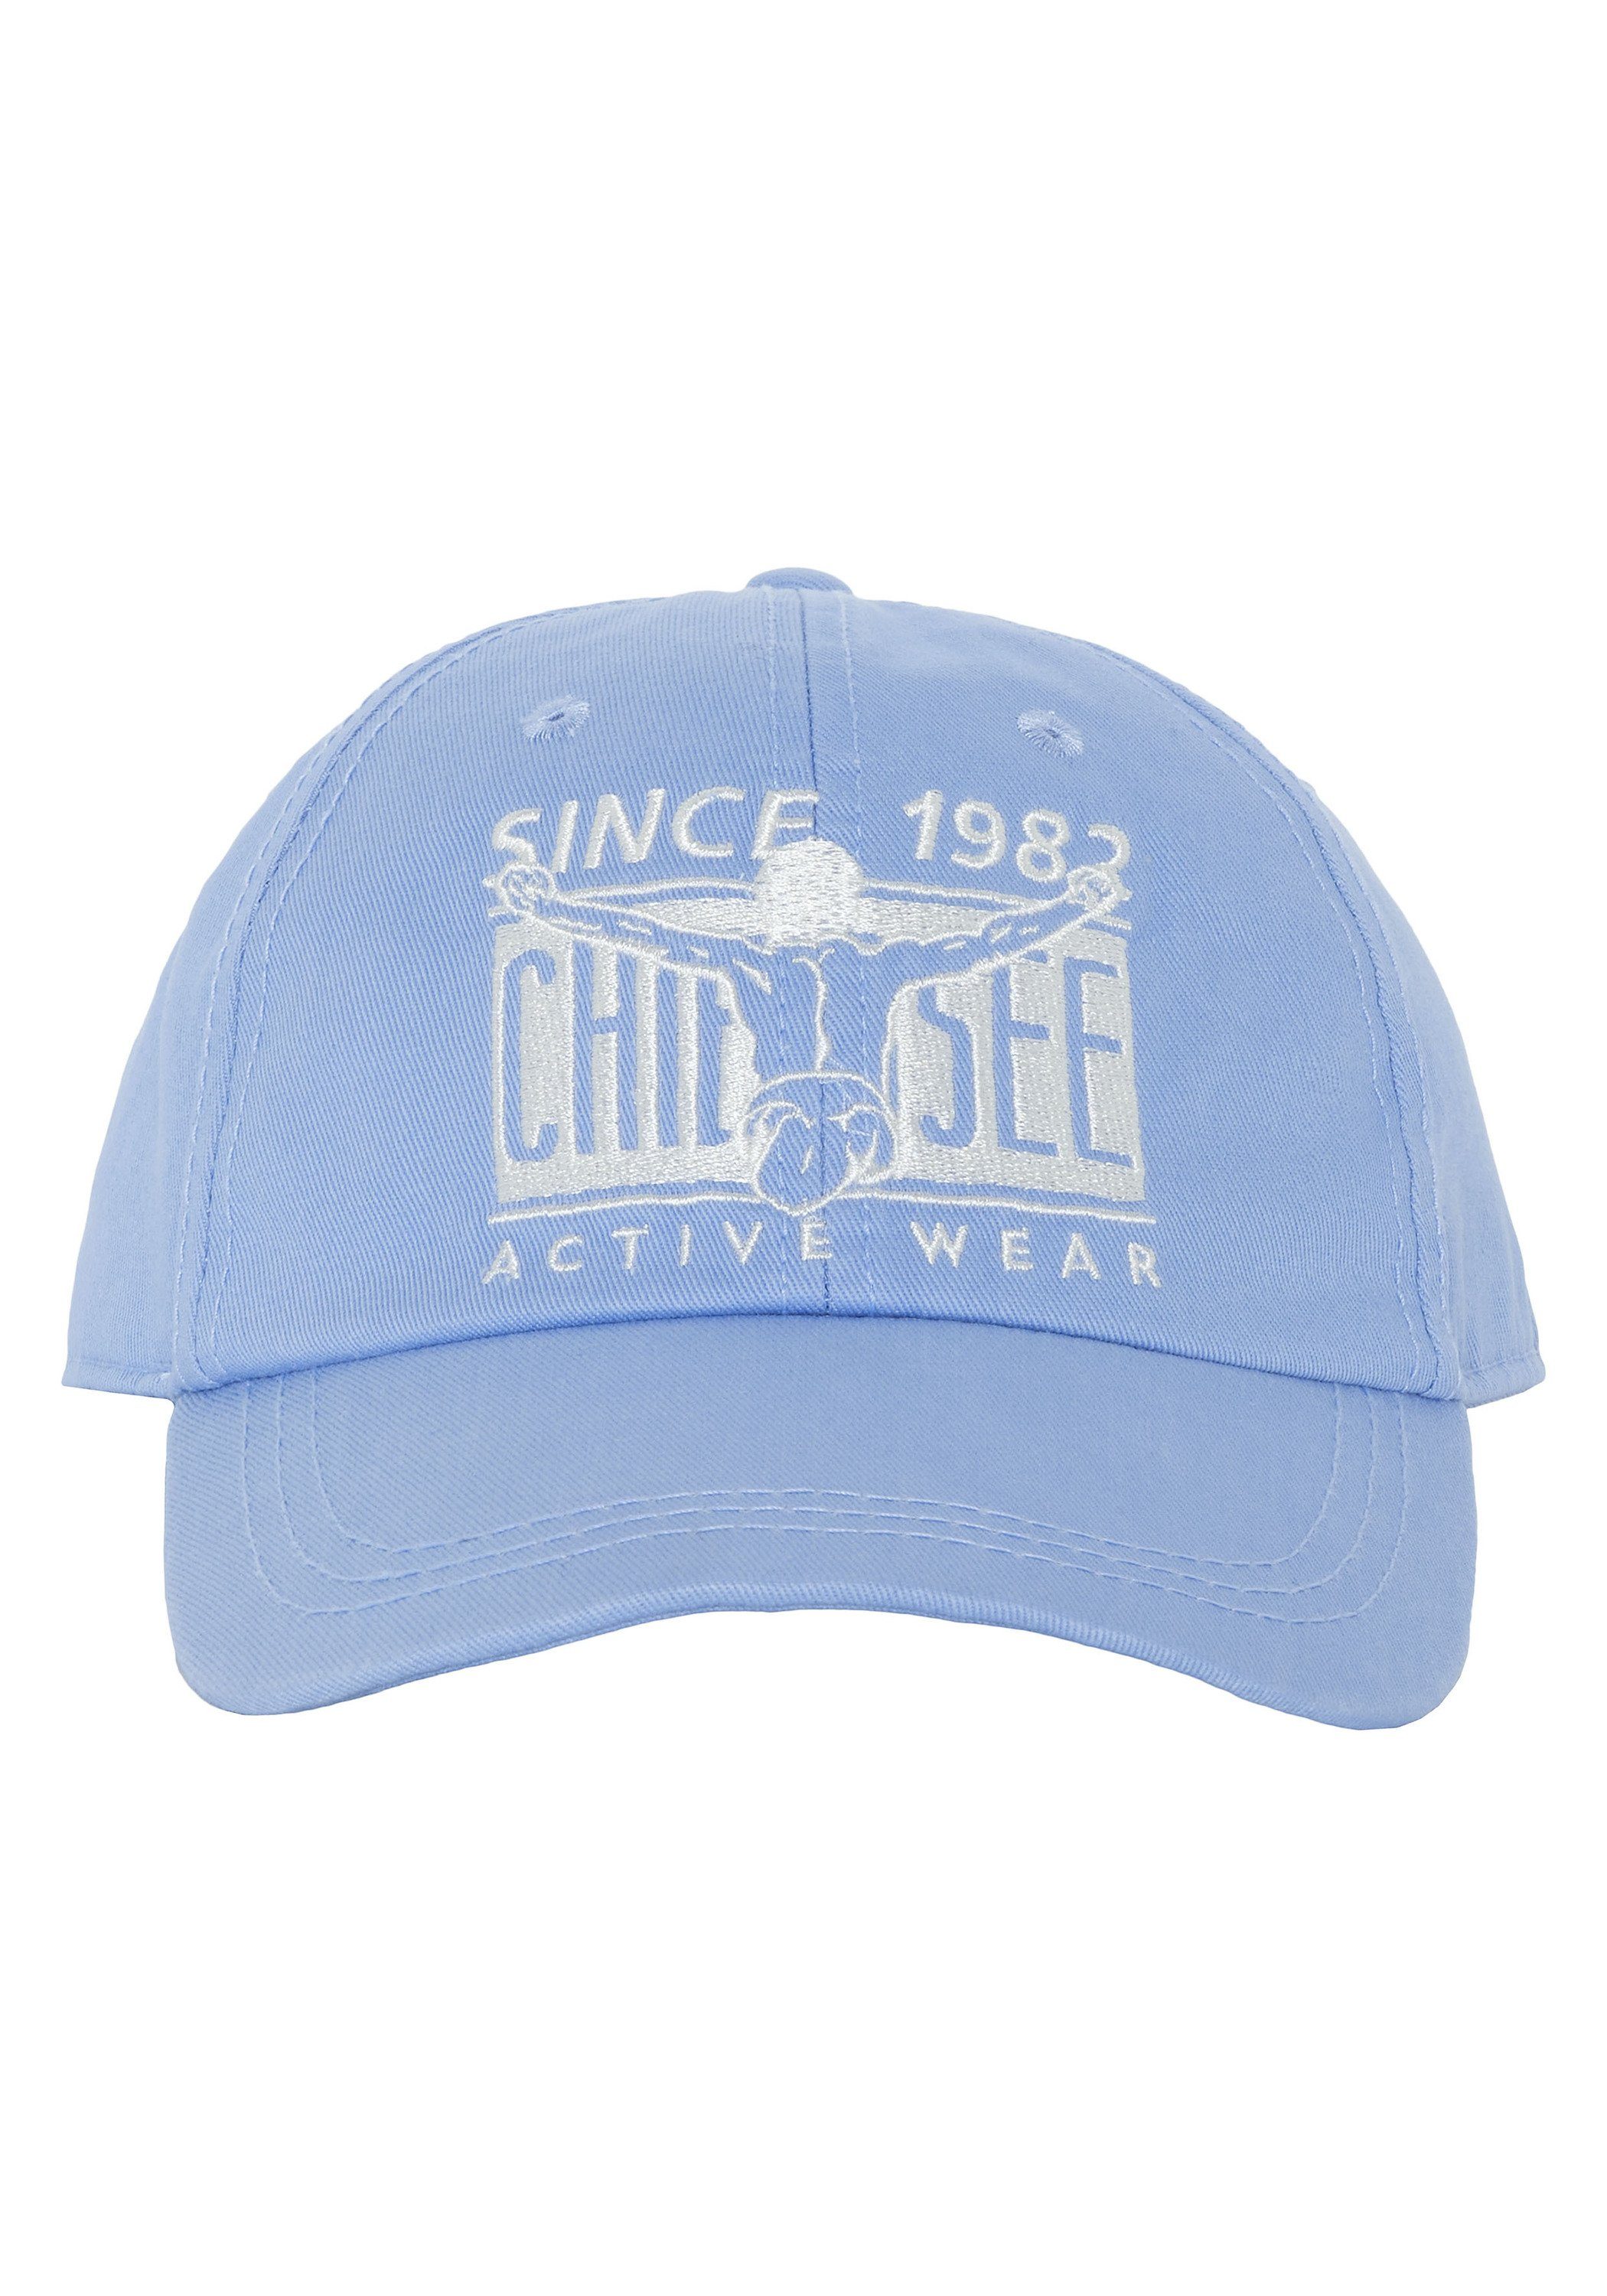 Cap Snapback 15-3932 aus Bel Chiemsee Label-Design im Blue Air Baumwolle Cap Unisex 1